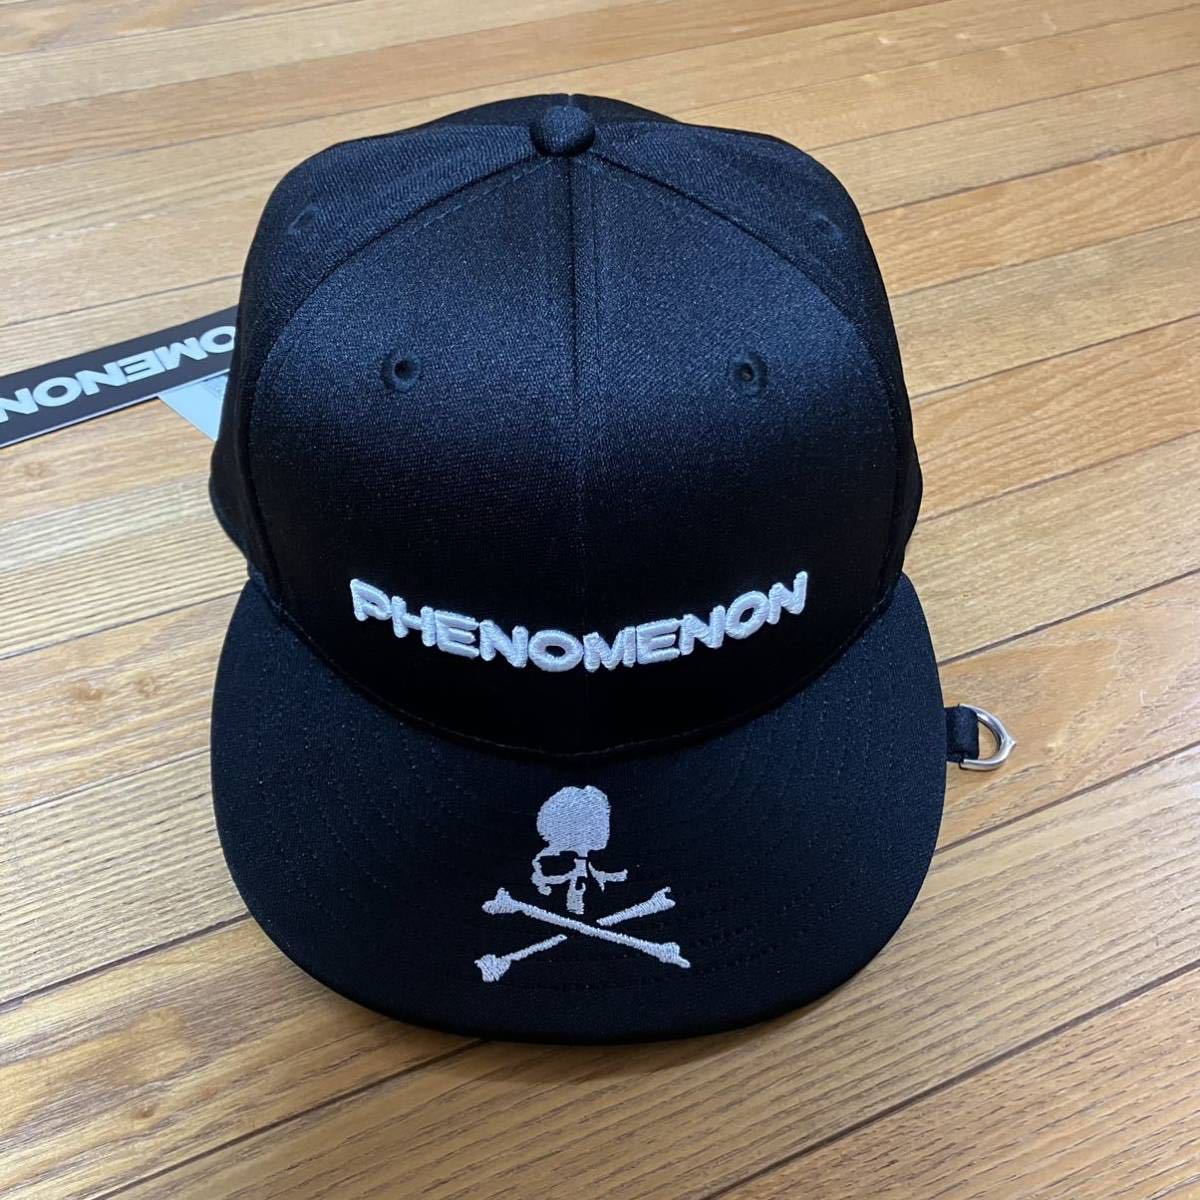 フェノメノン PHENOMENON × MASTERMIND WORLD × NEW ERA / BLACK 7 3/8 完売品 送料込み